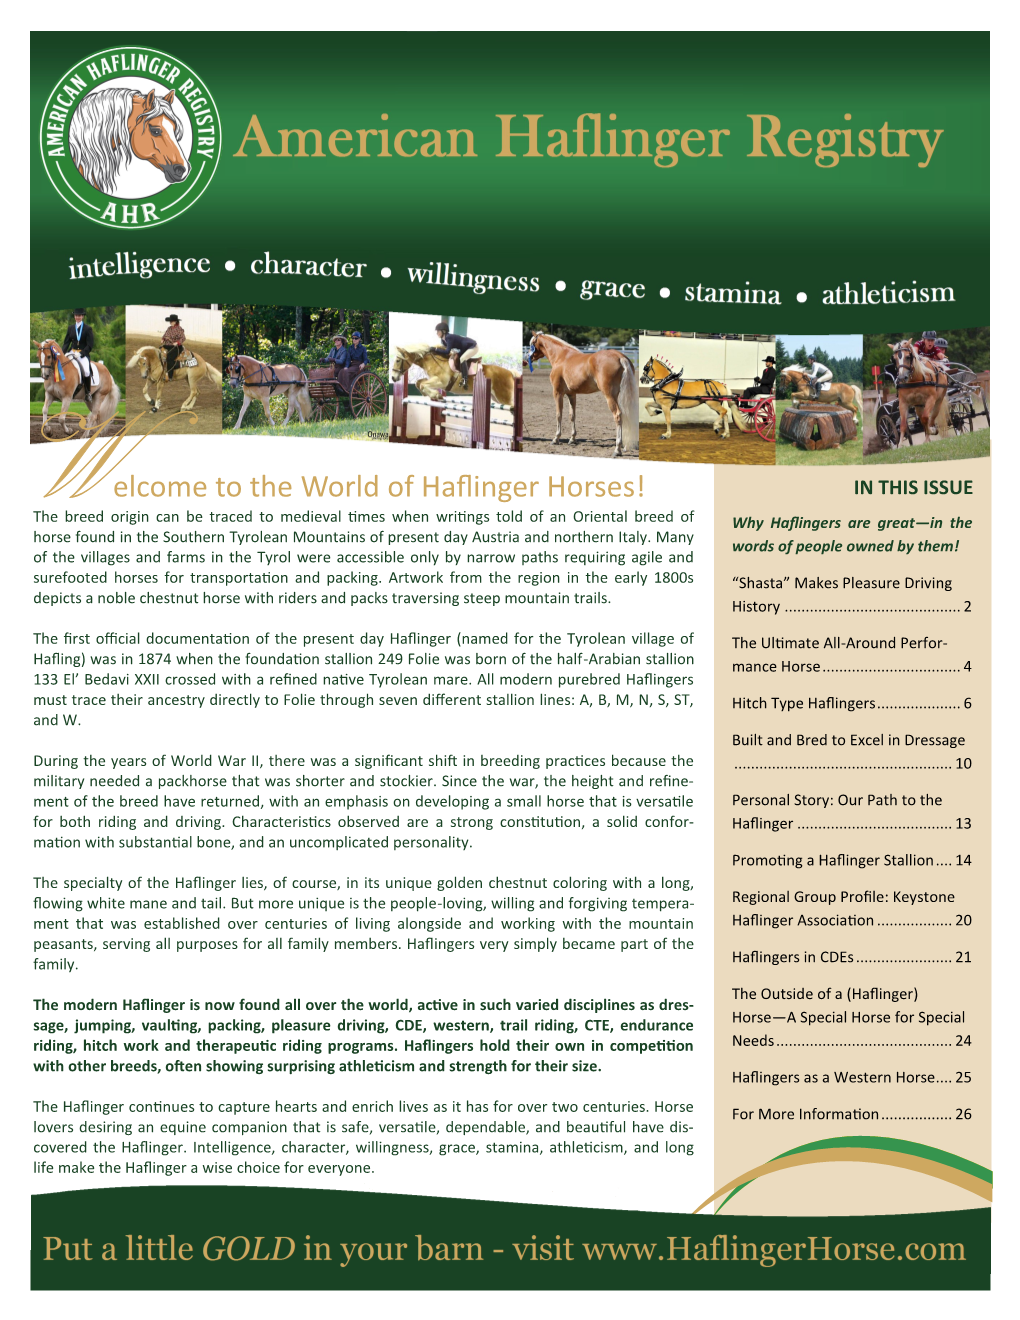 The World of Haflinger Horses!